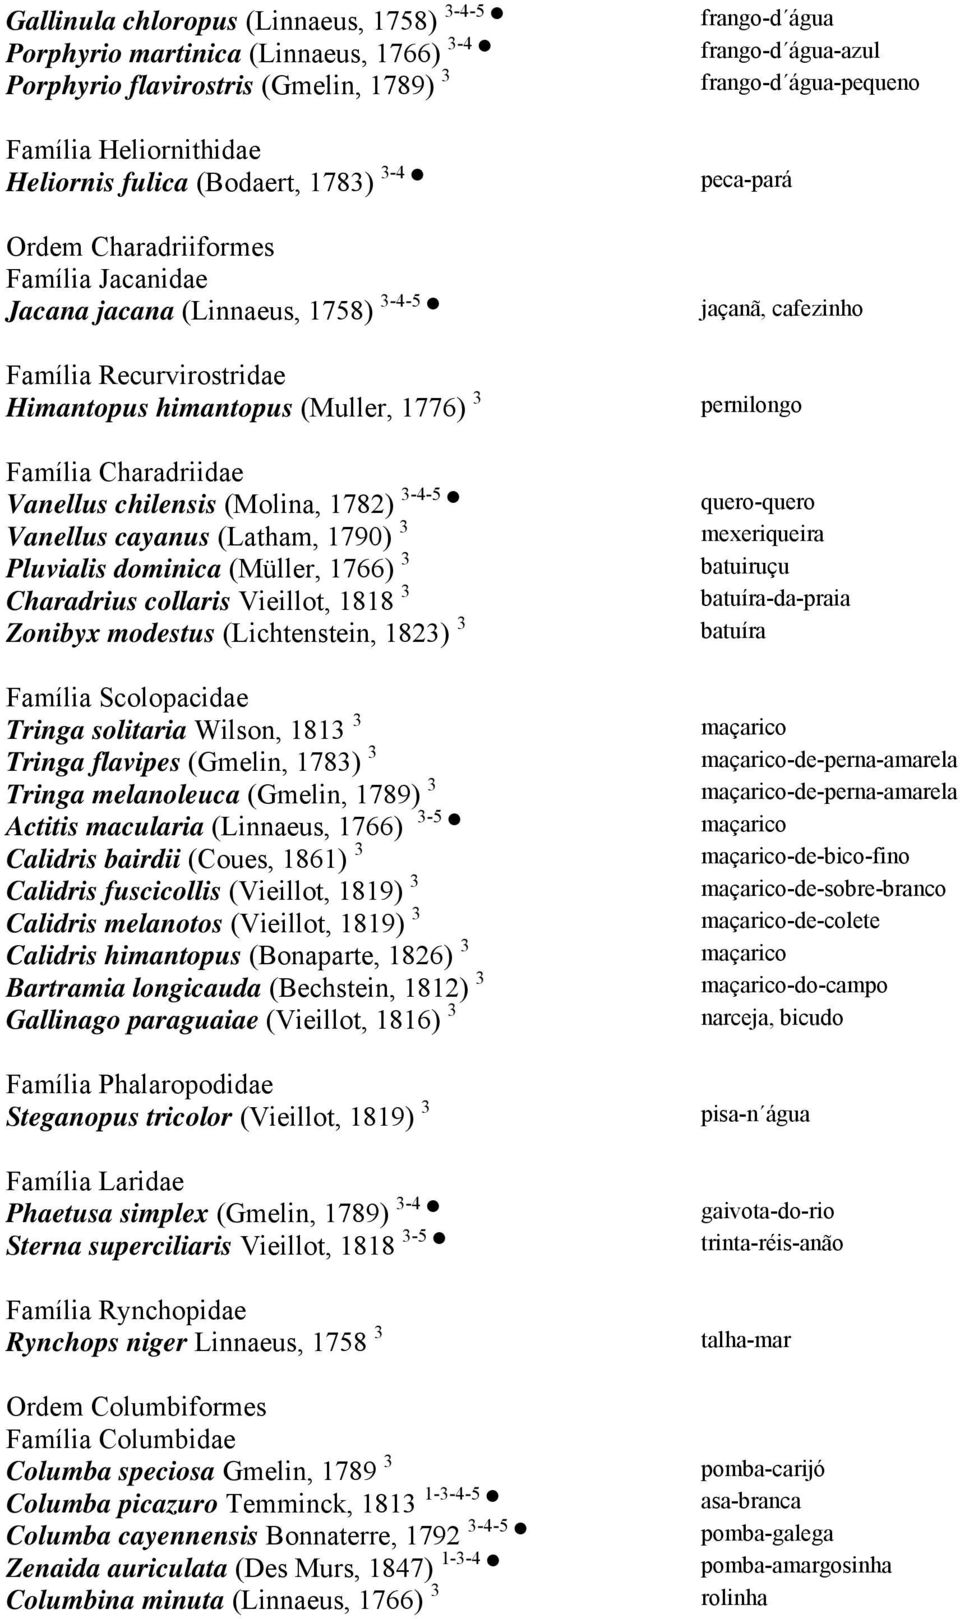 himantopus (Muller, 1776) 3 pernilongo Família Charadriidae Vanellus chilensis (Molina, 1782) 3-4-5 quero-quero Vanellus cayanus (Latham, 1790) 3 mexeriqueira Pluvialis dominica (Müller, 1766) 3